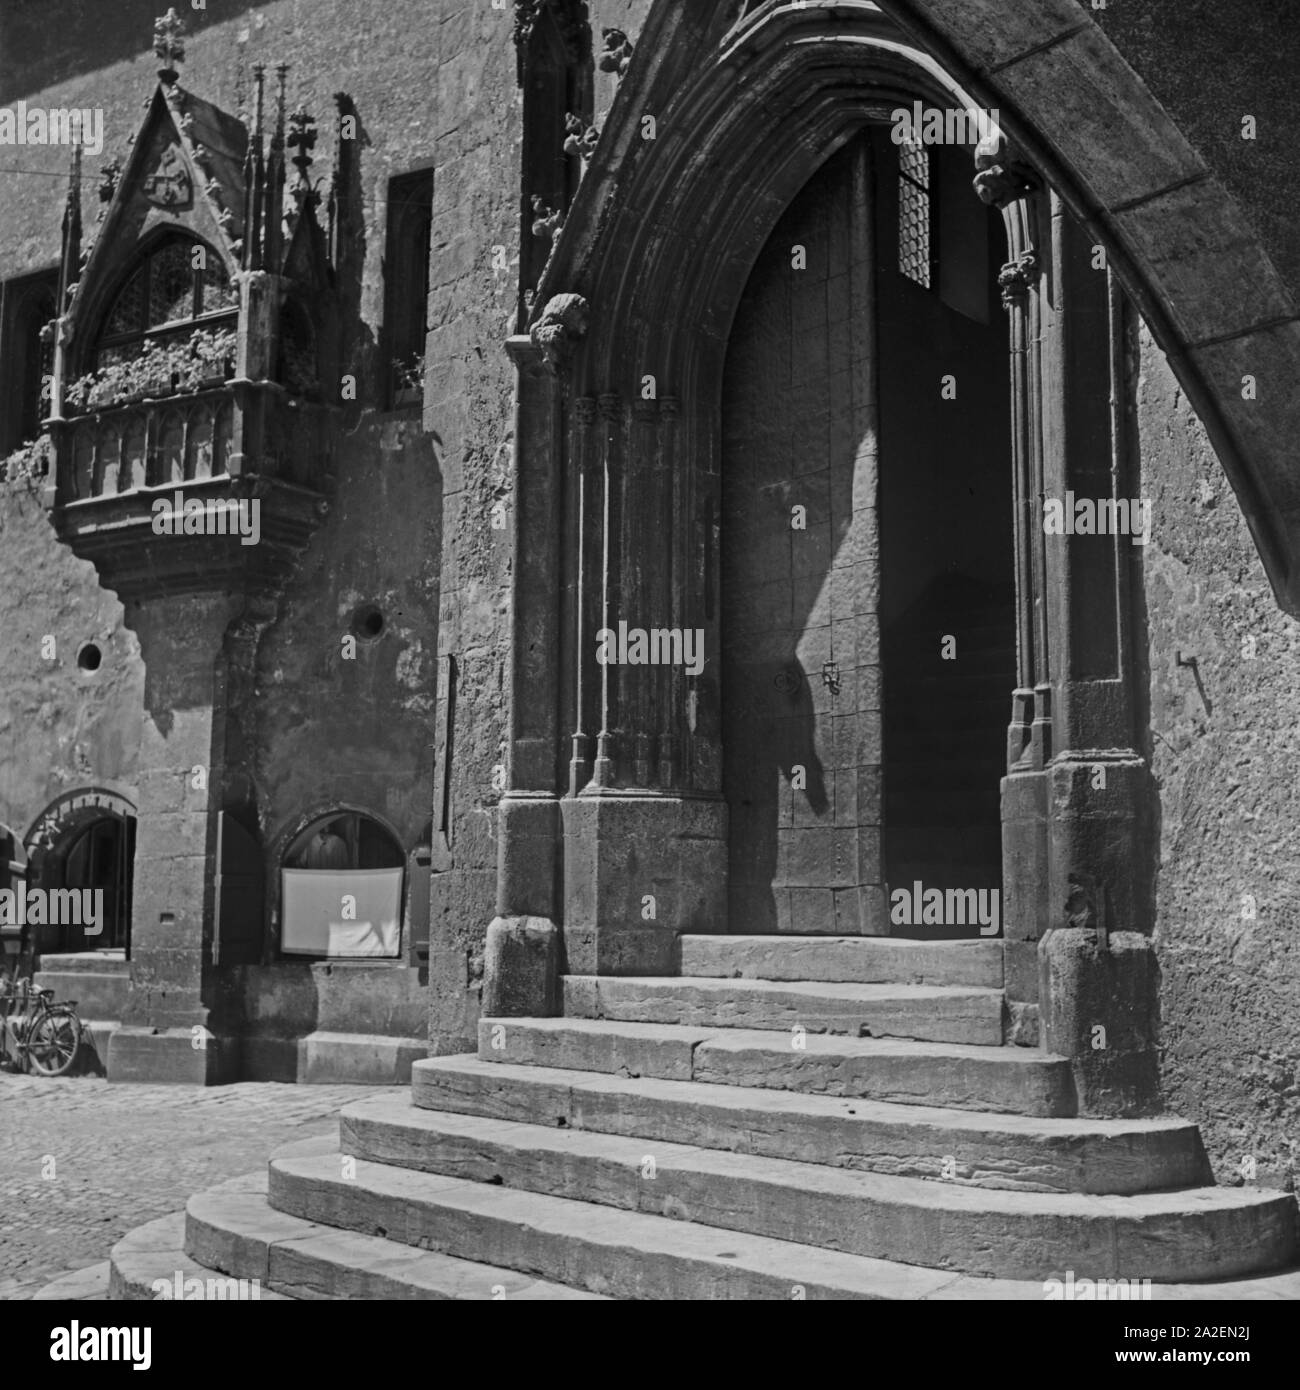 Portal des Alten Rathauses in Regensburg, Deutschland 1930er Jahre. Ingresso del vecchio Regensburg town hall, Germania 1930s. Foto Stock